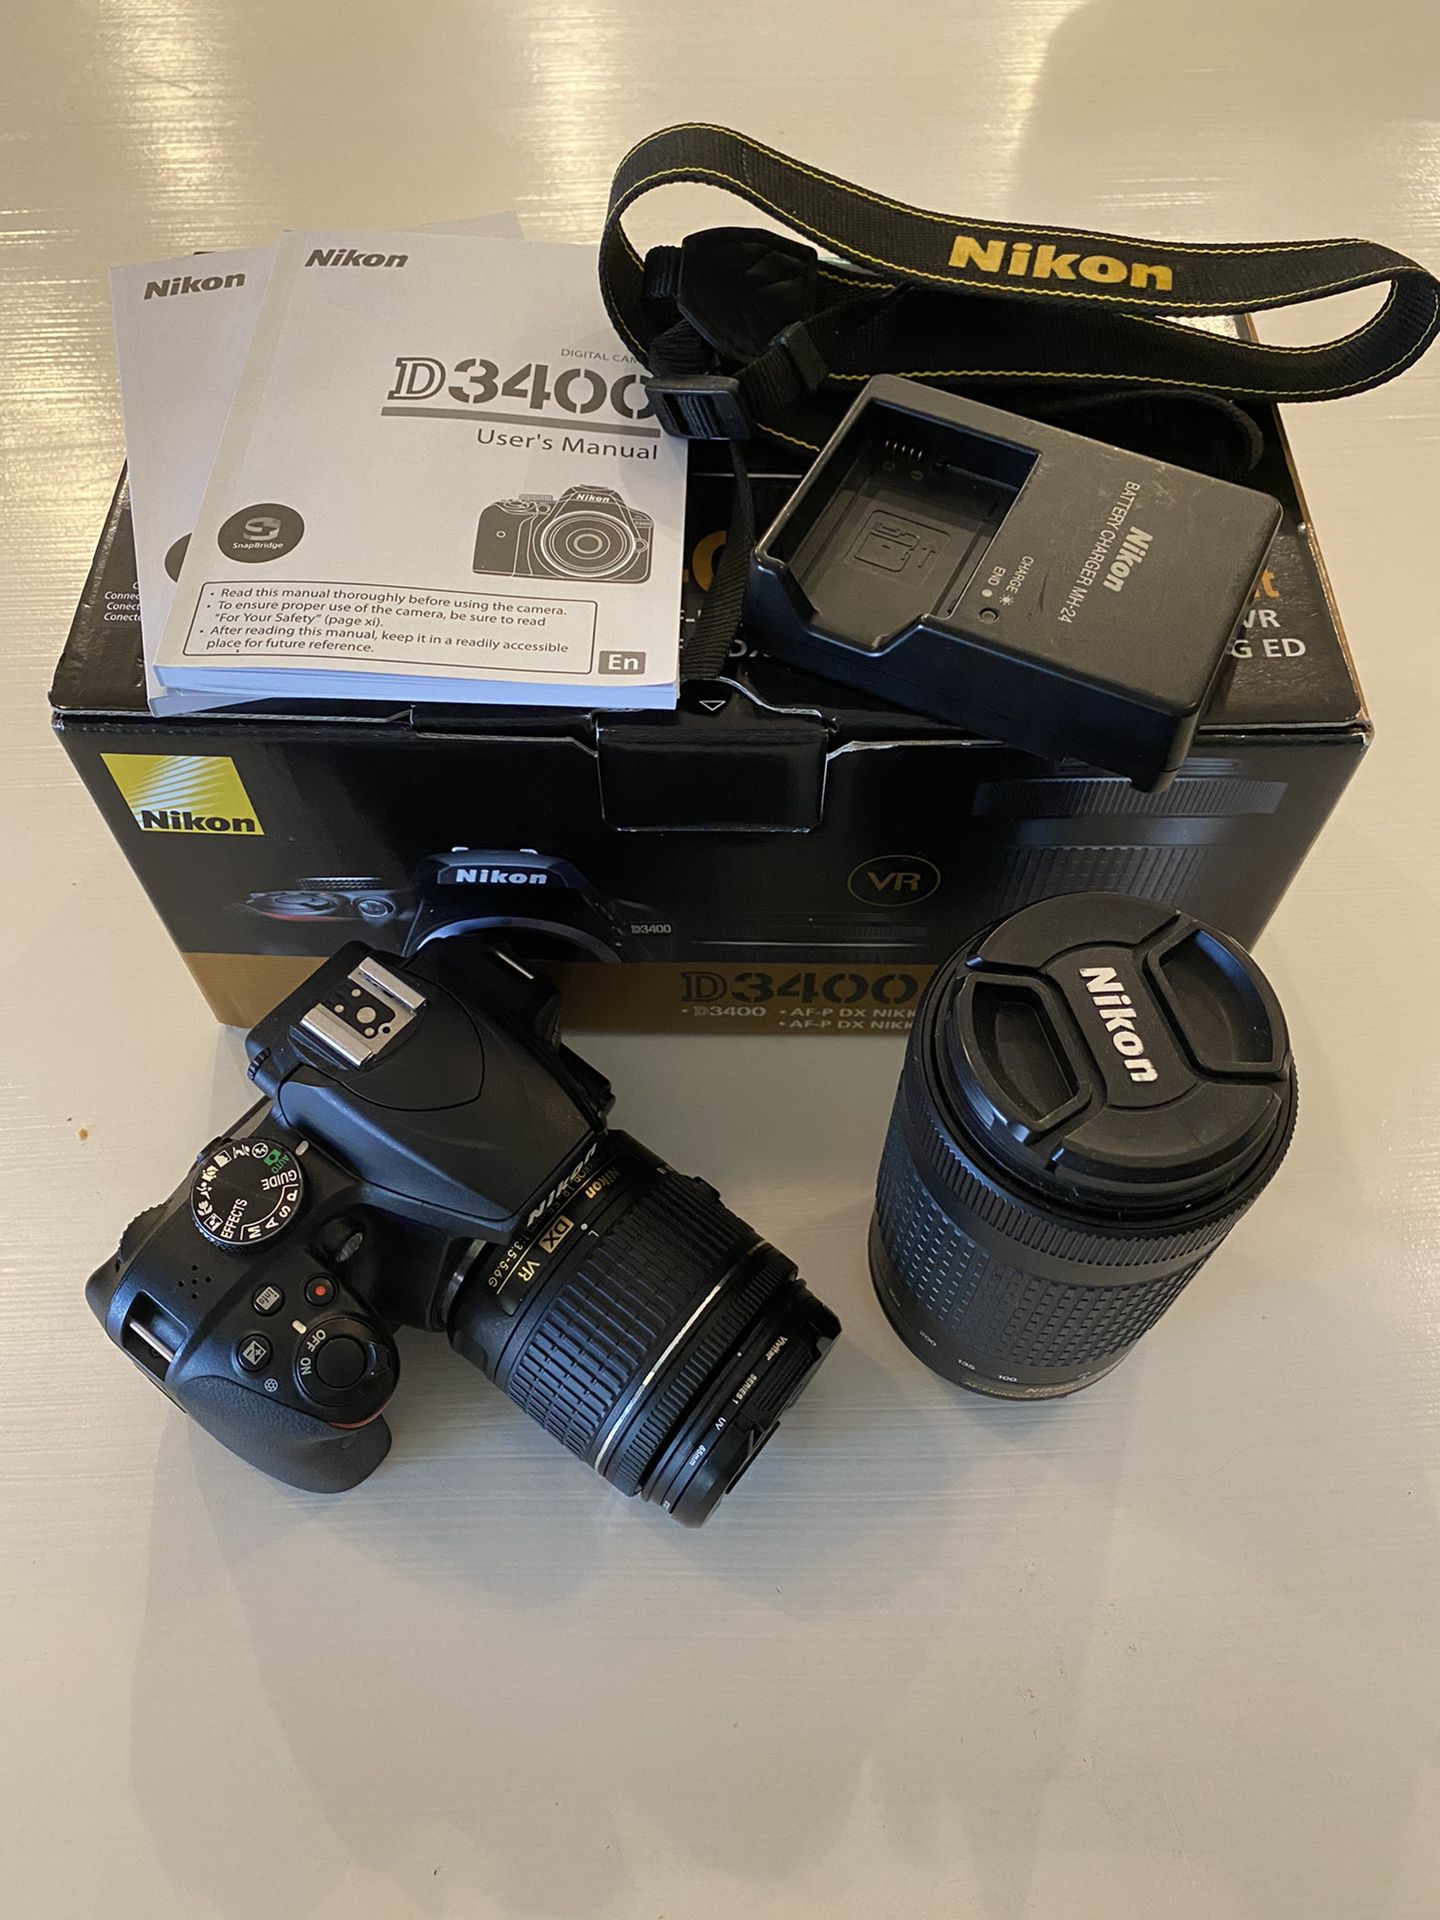 Nikon d3400 dslr camera